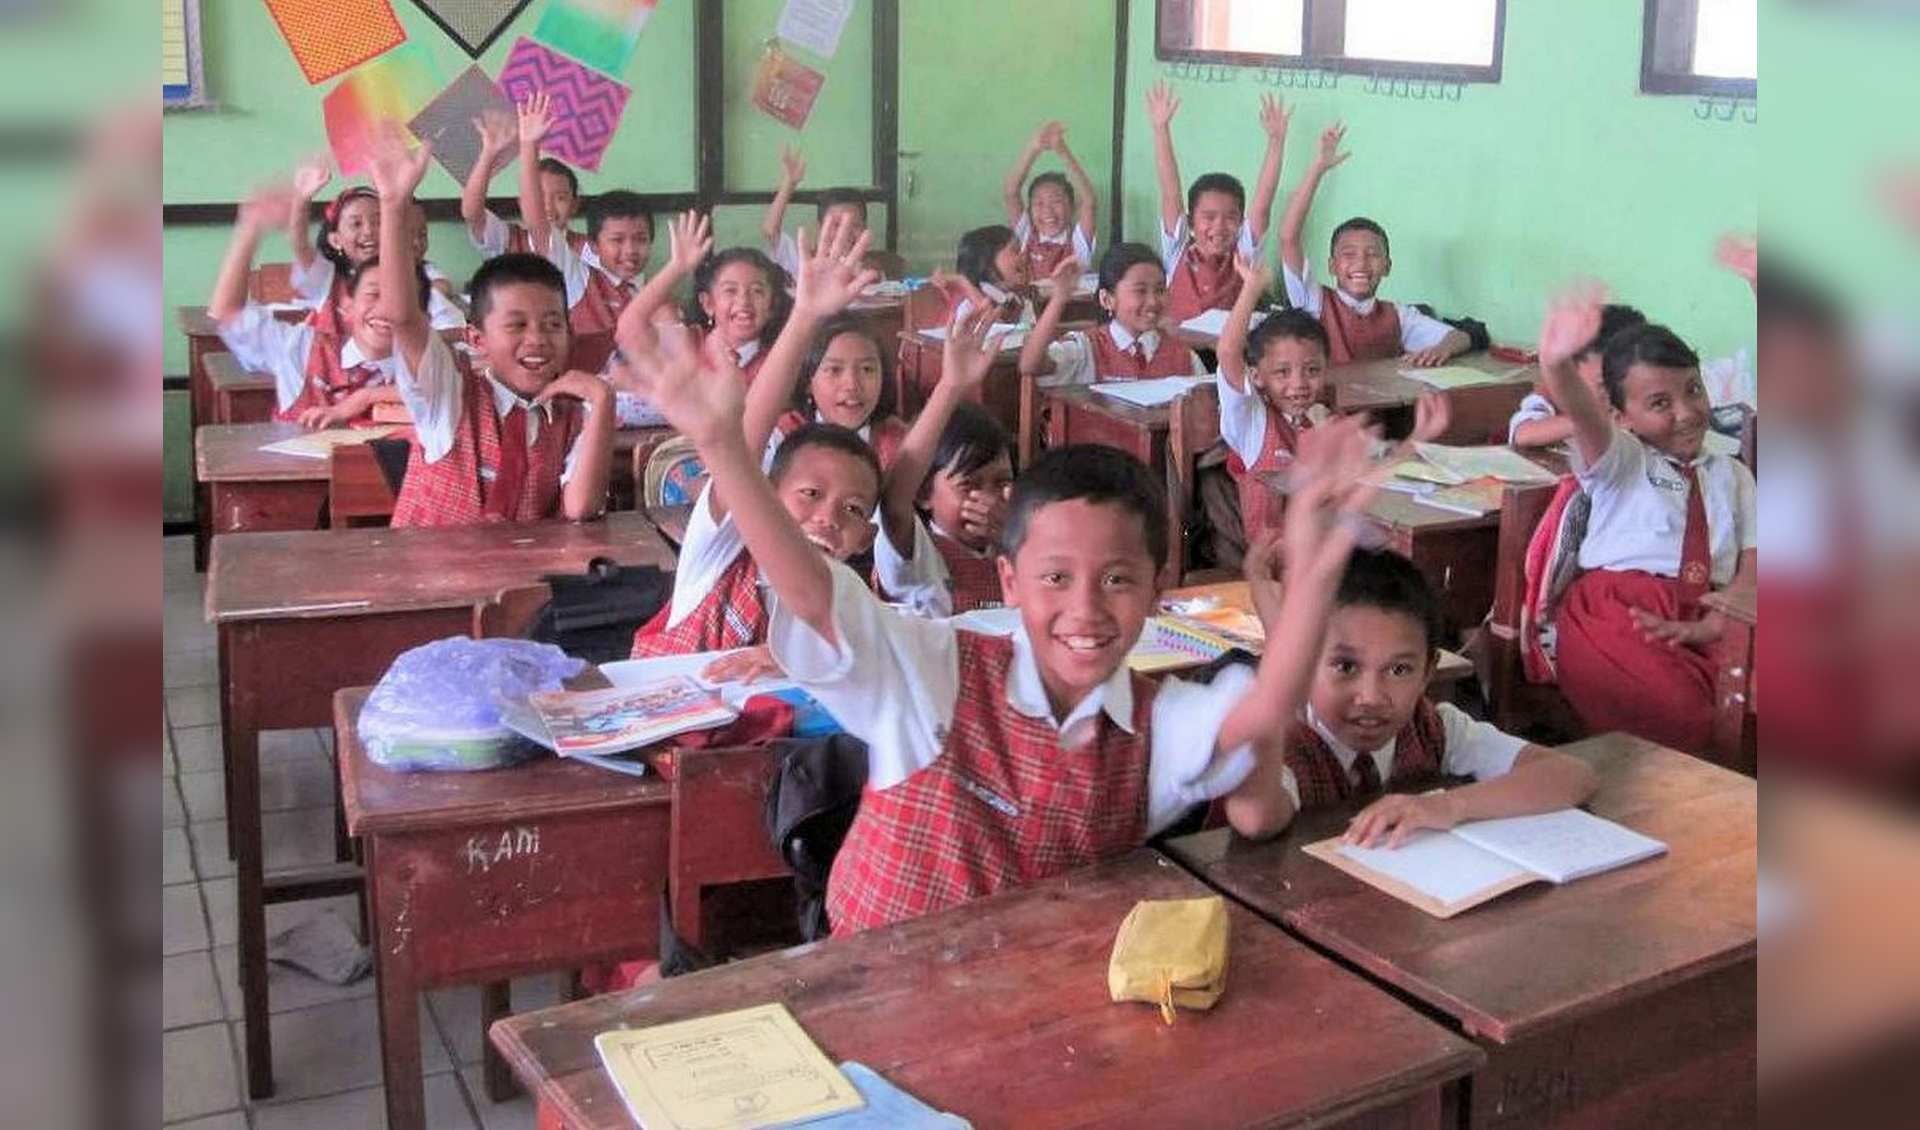 De West-Friese stichting Kartini zet zich al veertig jaar in voor kansarme kinderen in de regio Malang op Oost Java, Indonesië. Het doel: door scholing de kinderen een kans te geven op een betere toekomst. (Foto: aangeleverd)